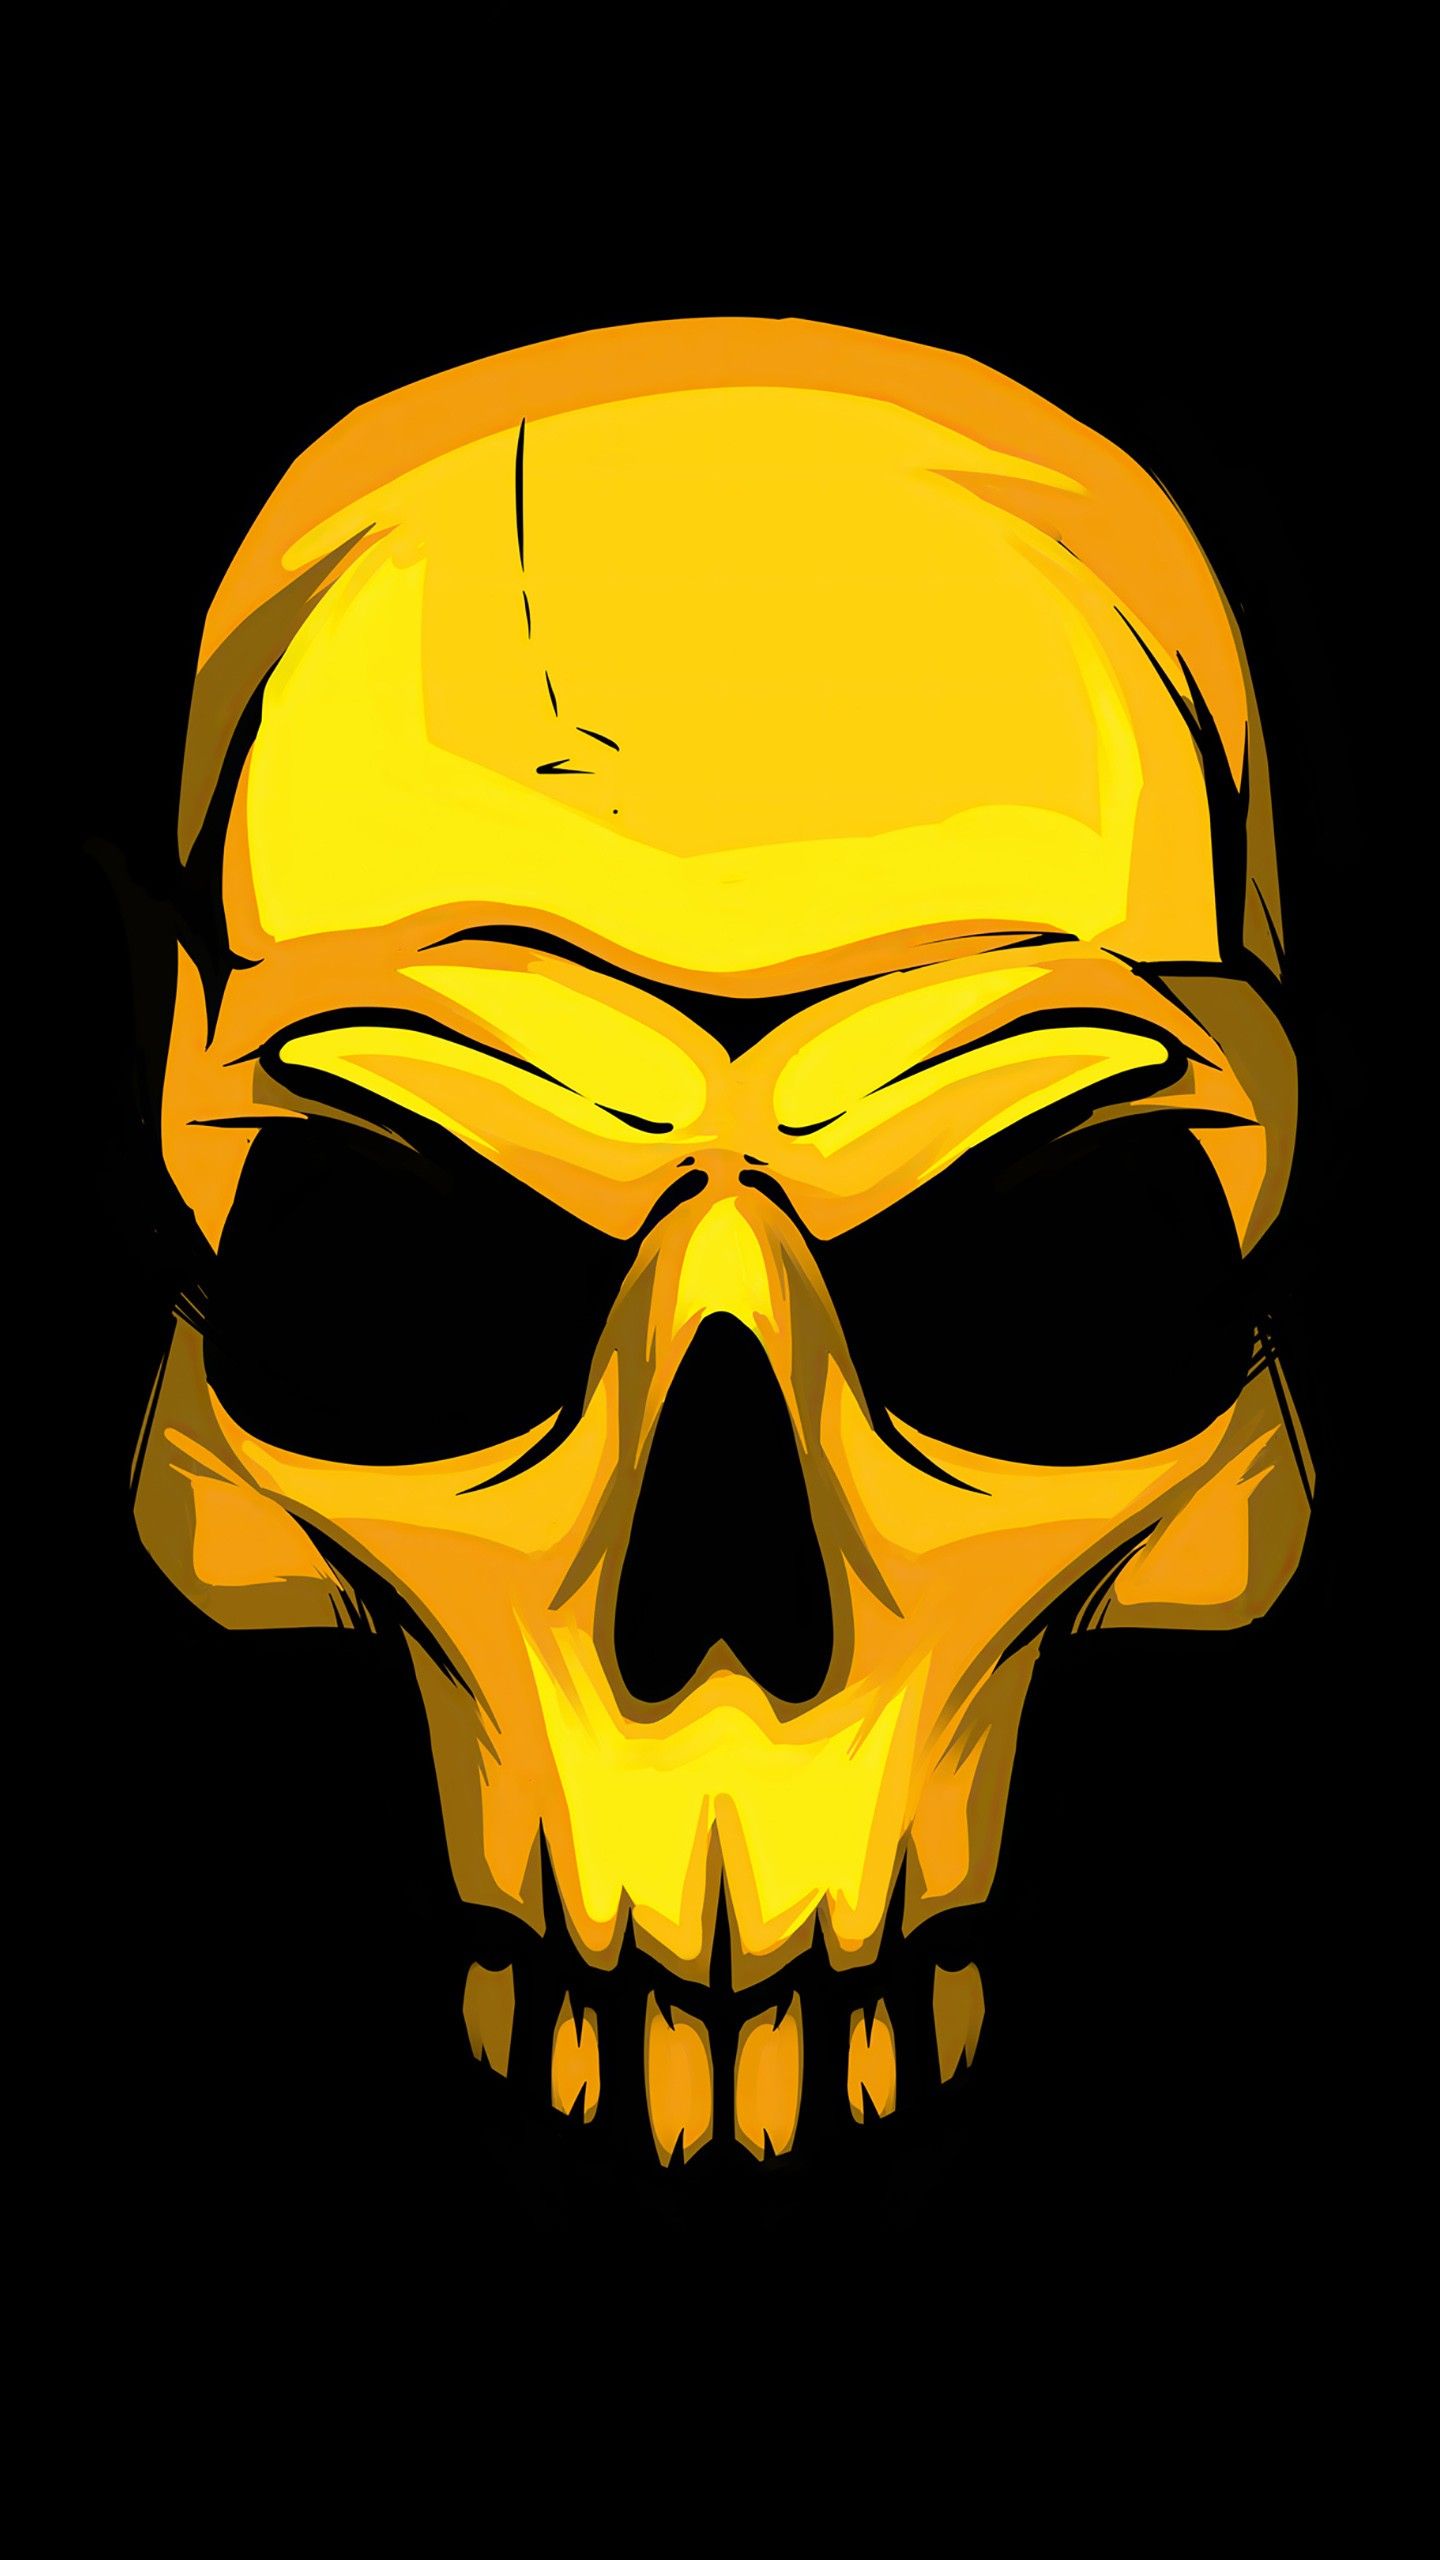 Golden skull steam